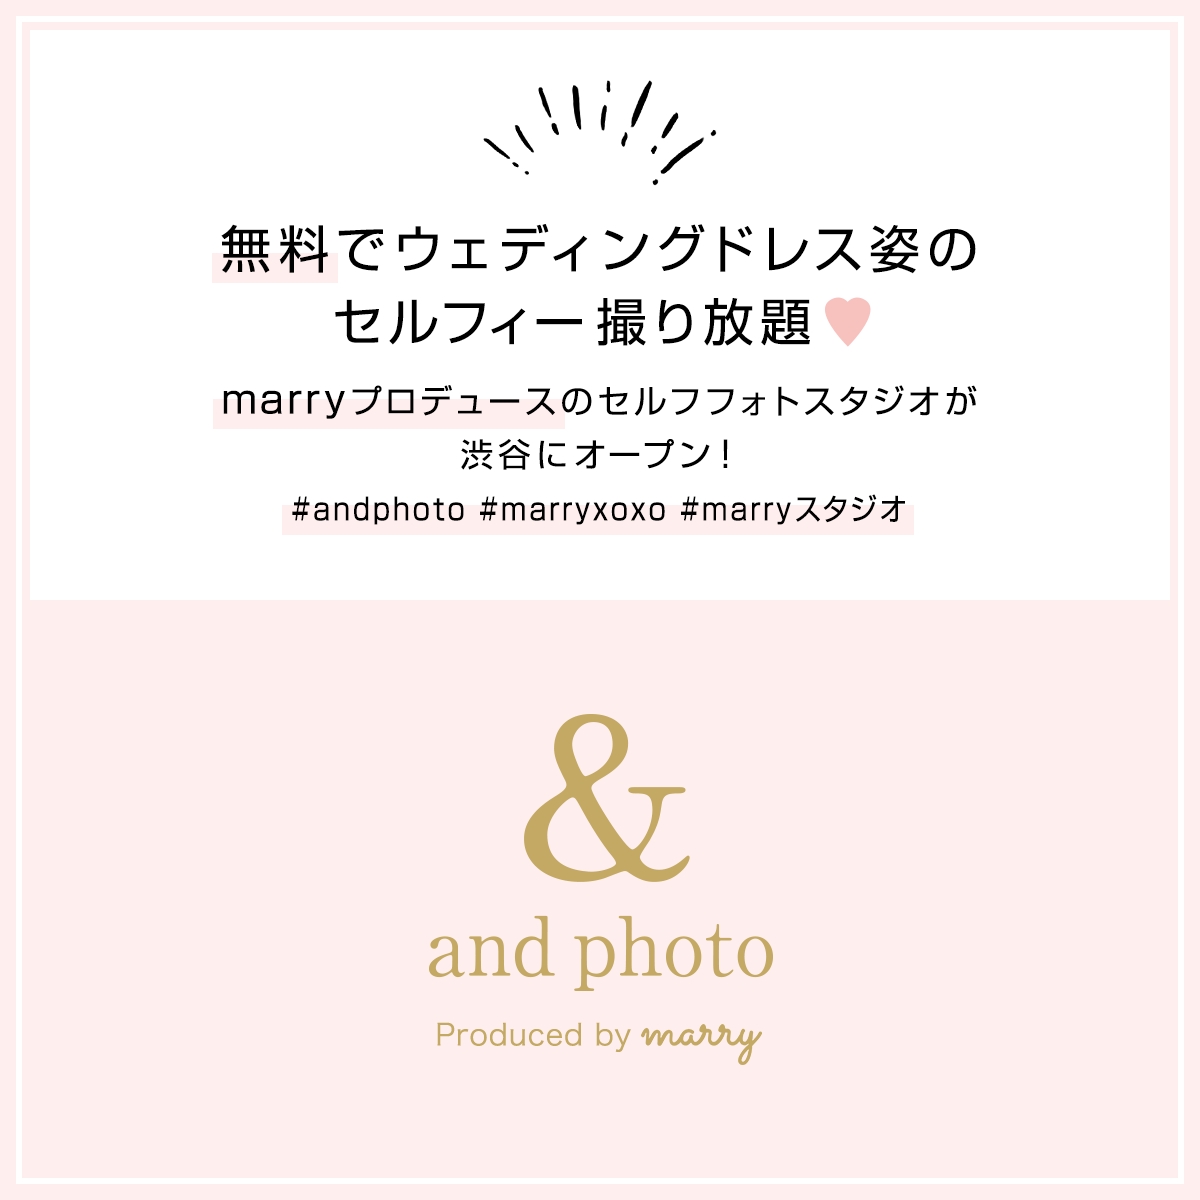 無料でウェディングドレス姿のセルフィー撮り放題 Marryプロデュースのセルフフォトスタジオ And Photo が18年1月 渋谷にオープン 株式会社メイションのプレスリリース